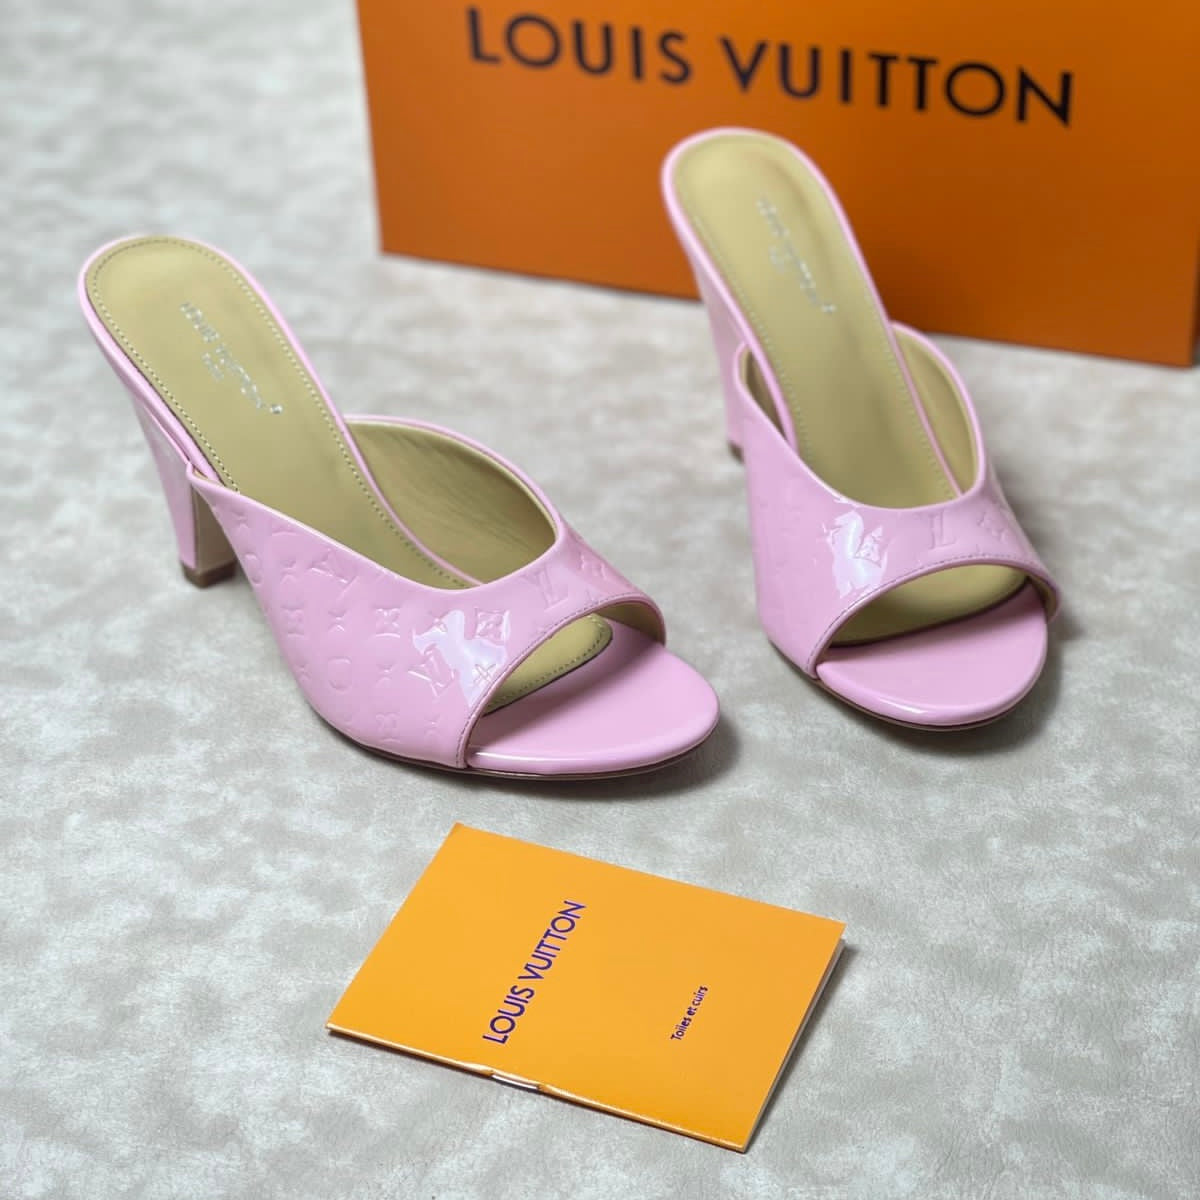 Louis Vuitton Style #4 Shoes